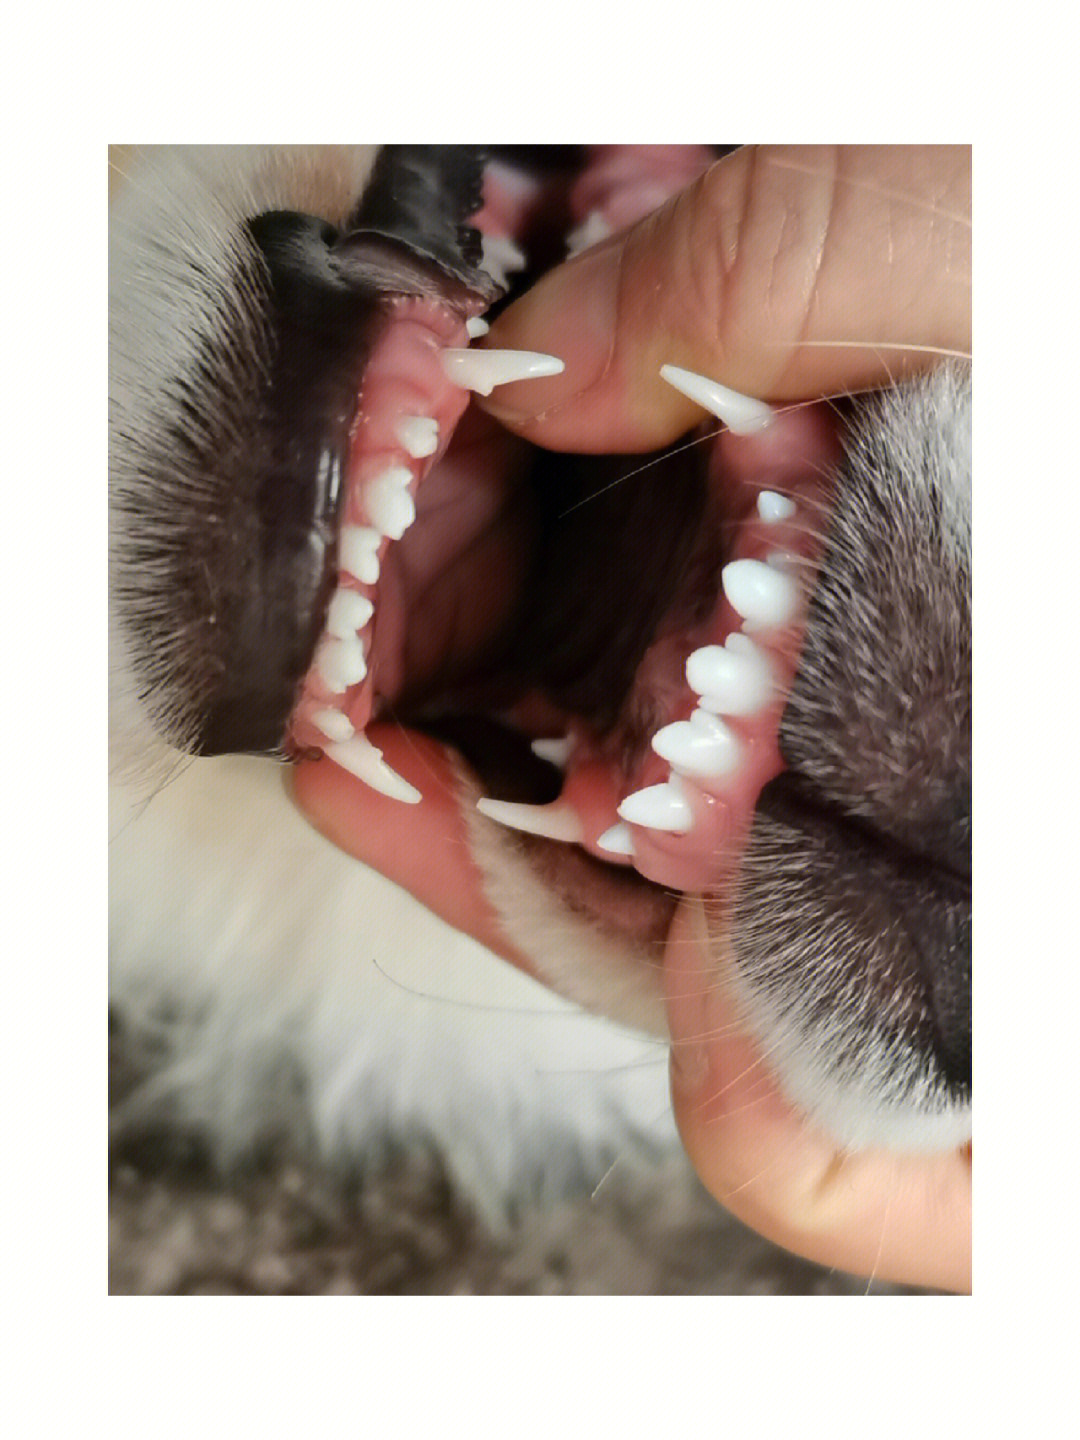 成年狗狗的牙齿照片图片